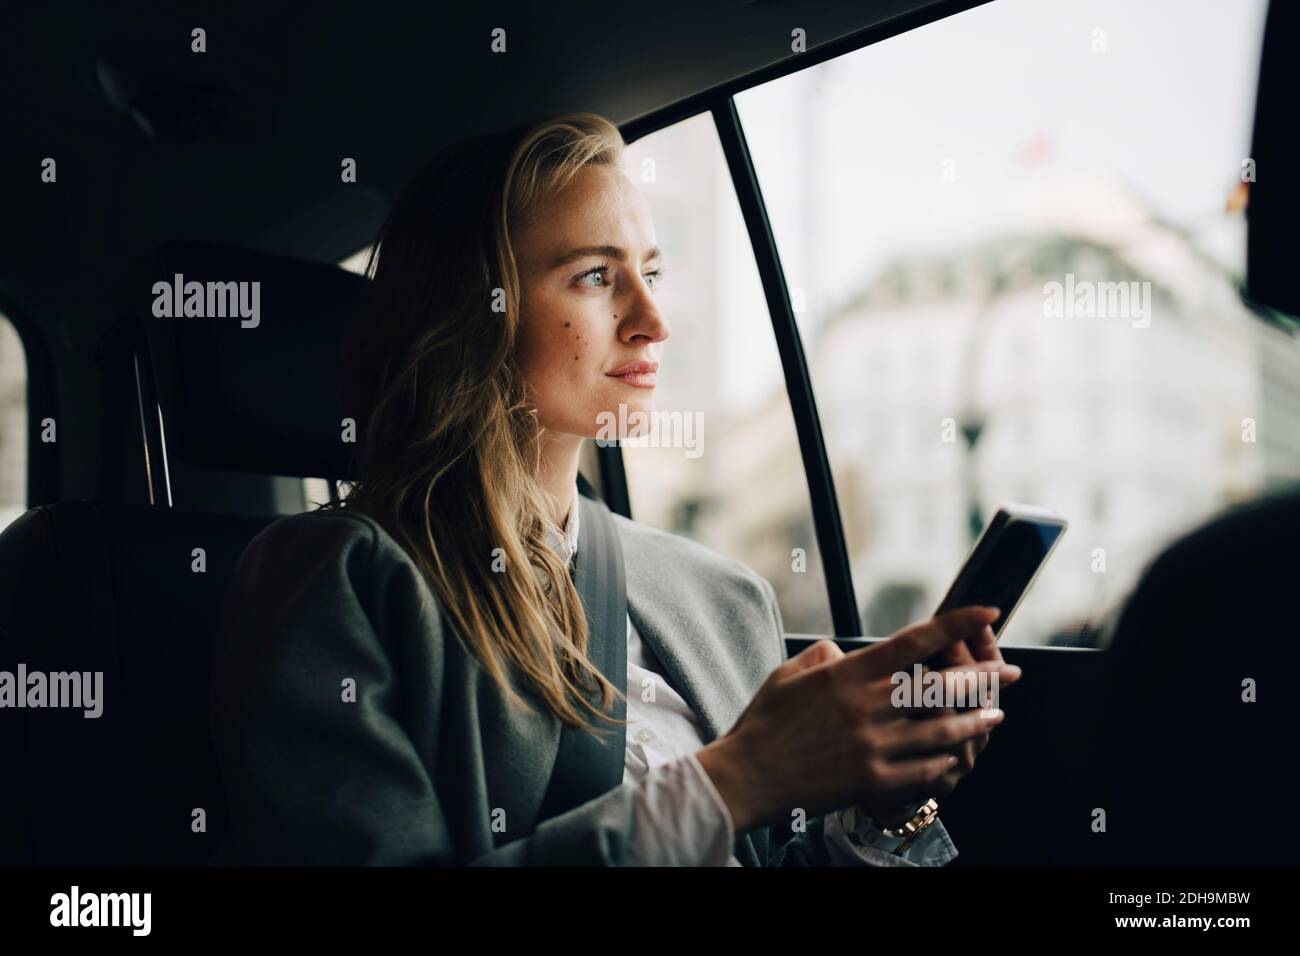 Betrachten weibliche Unternehmerin mit Smartphone Blick durch Fenster, während Sitzen im Taxi Stockfoto